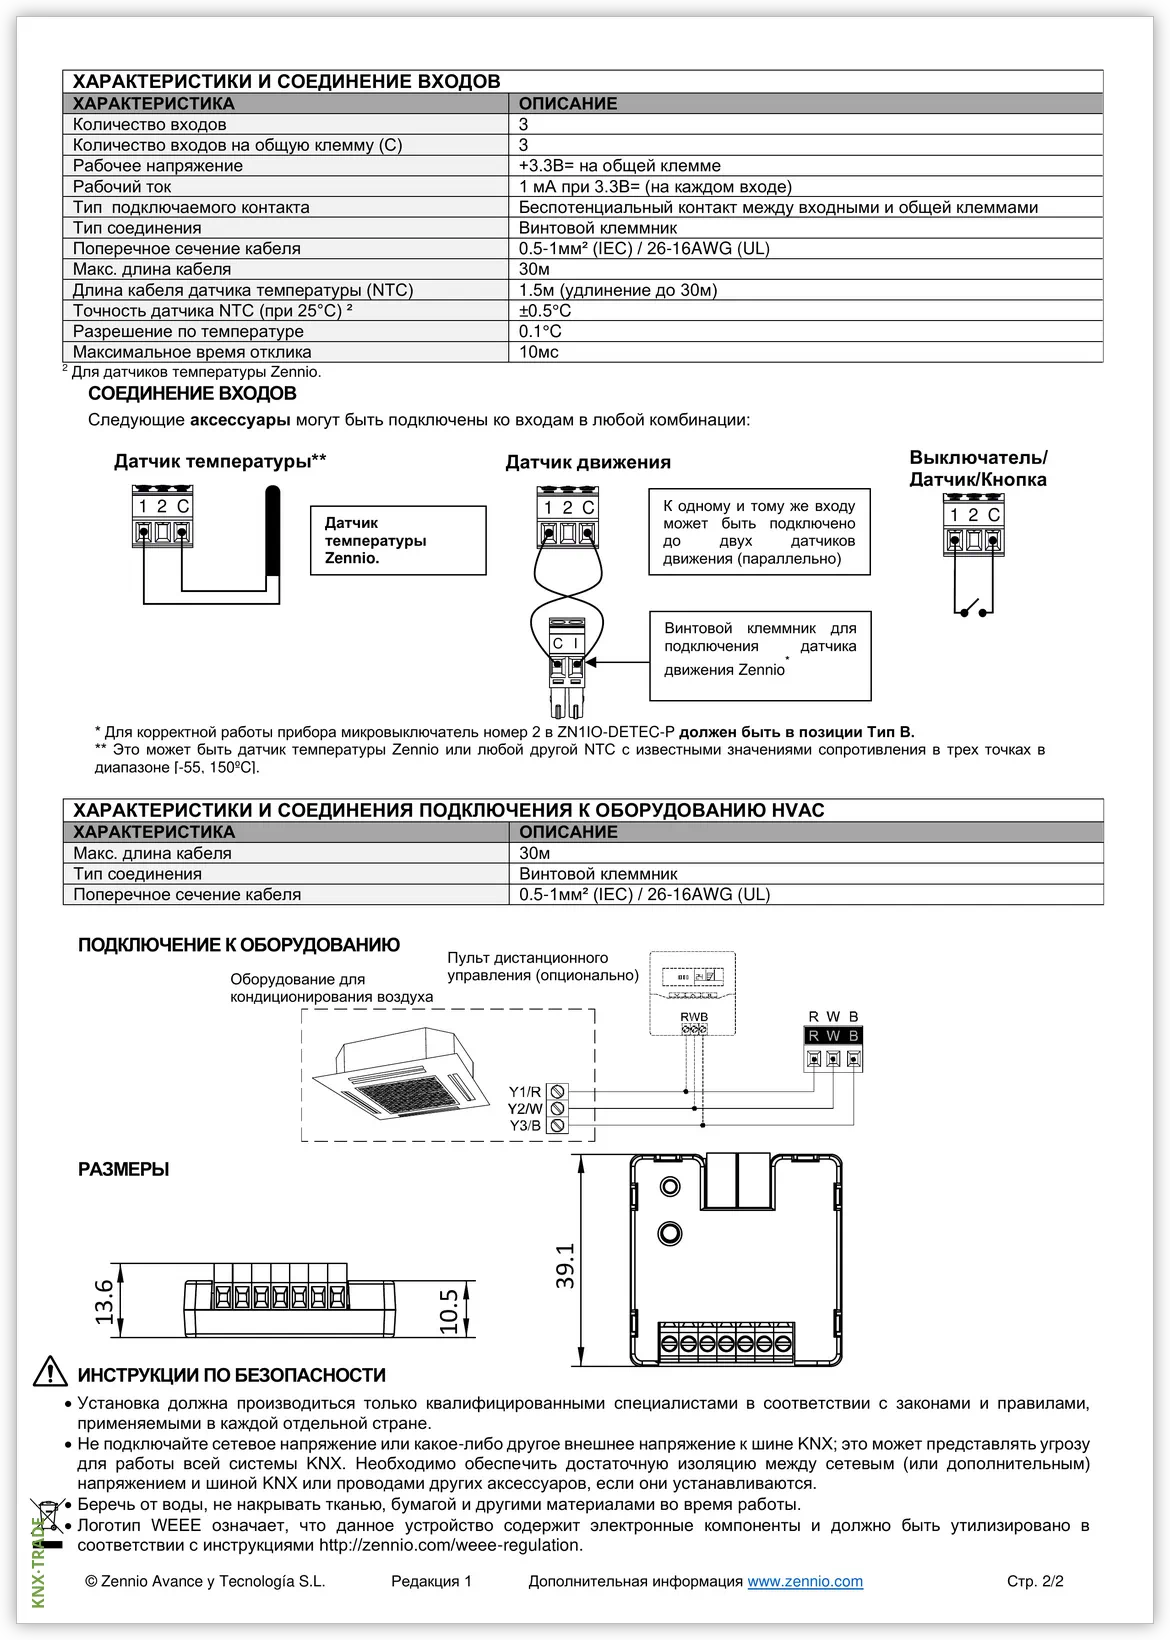 Datasheet (2) Zennio [ZCLFJVT] KLIC-FJ vT / Шлюз KNX-Fujitsu